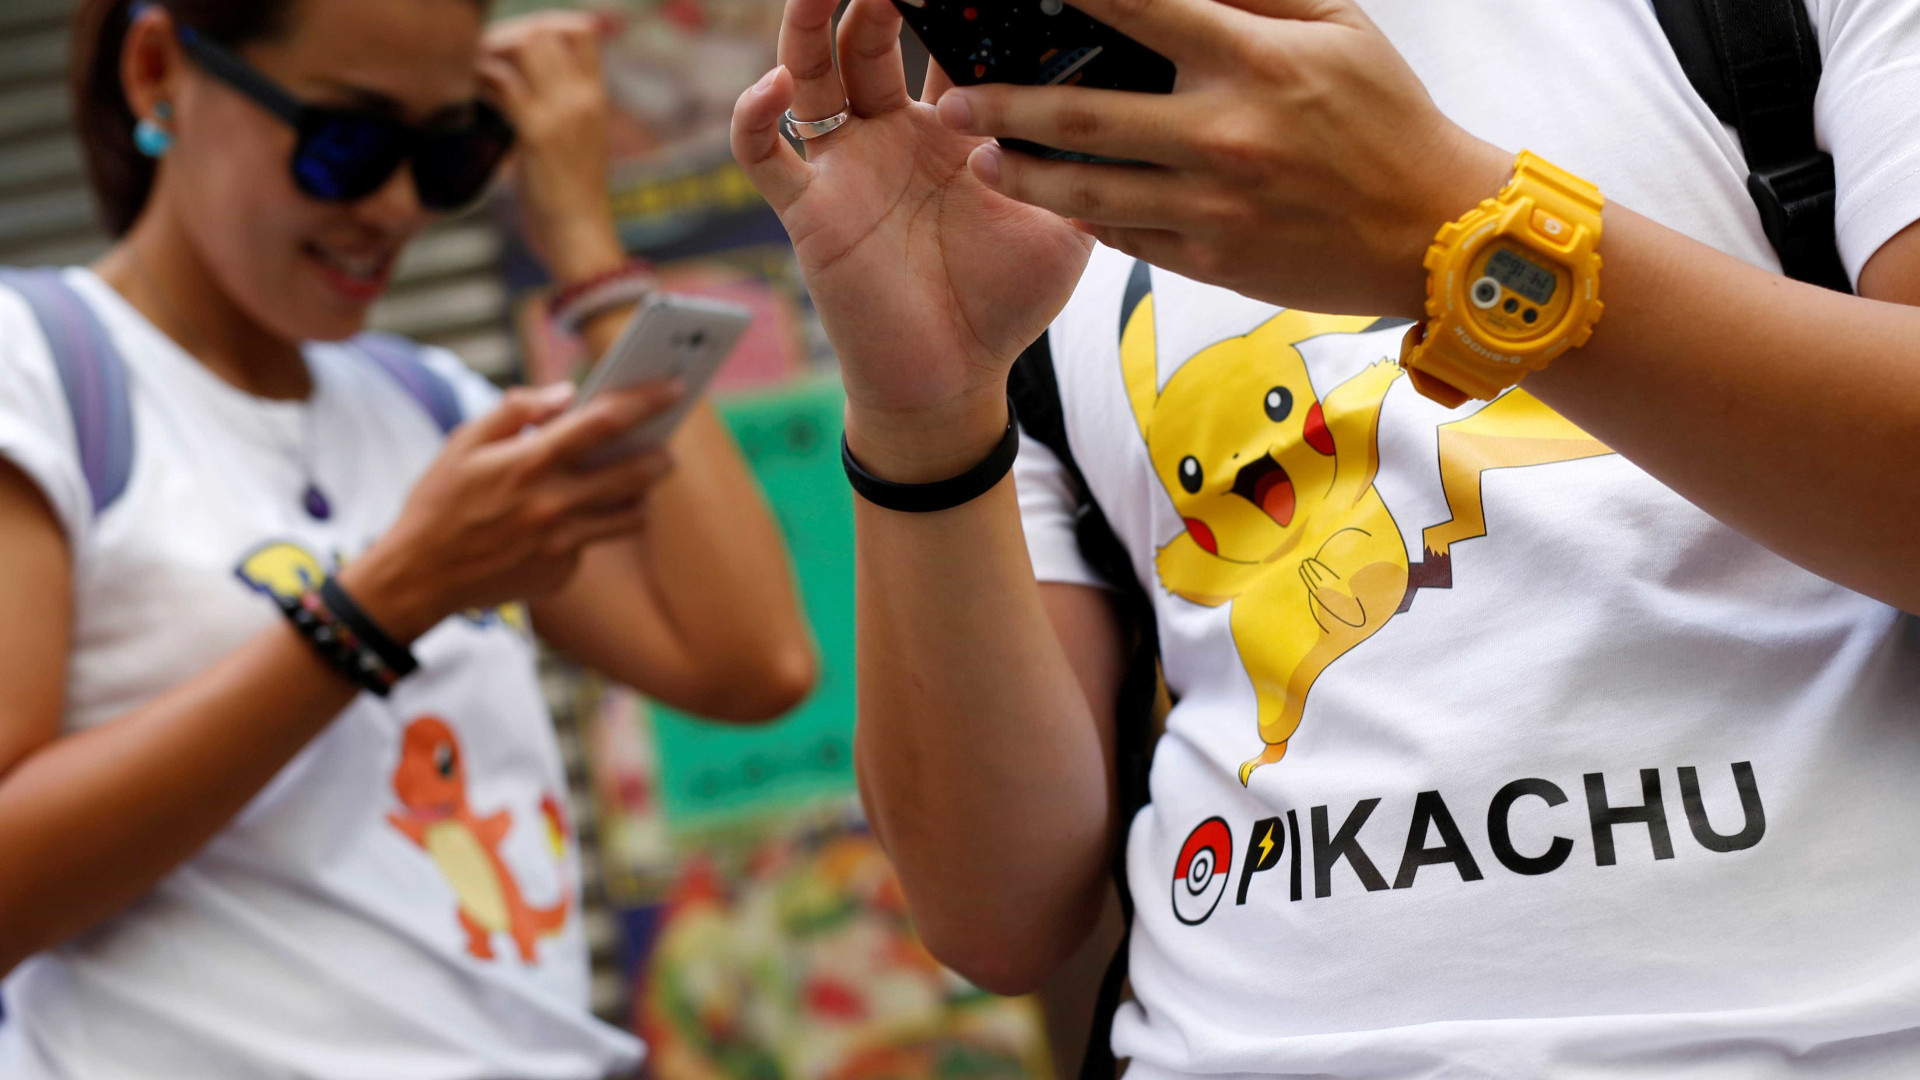 Festival de Pokémon Go termina em vaias e garrafas arremessadas